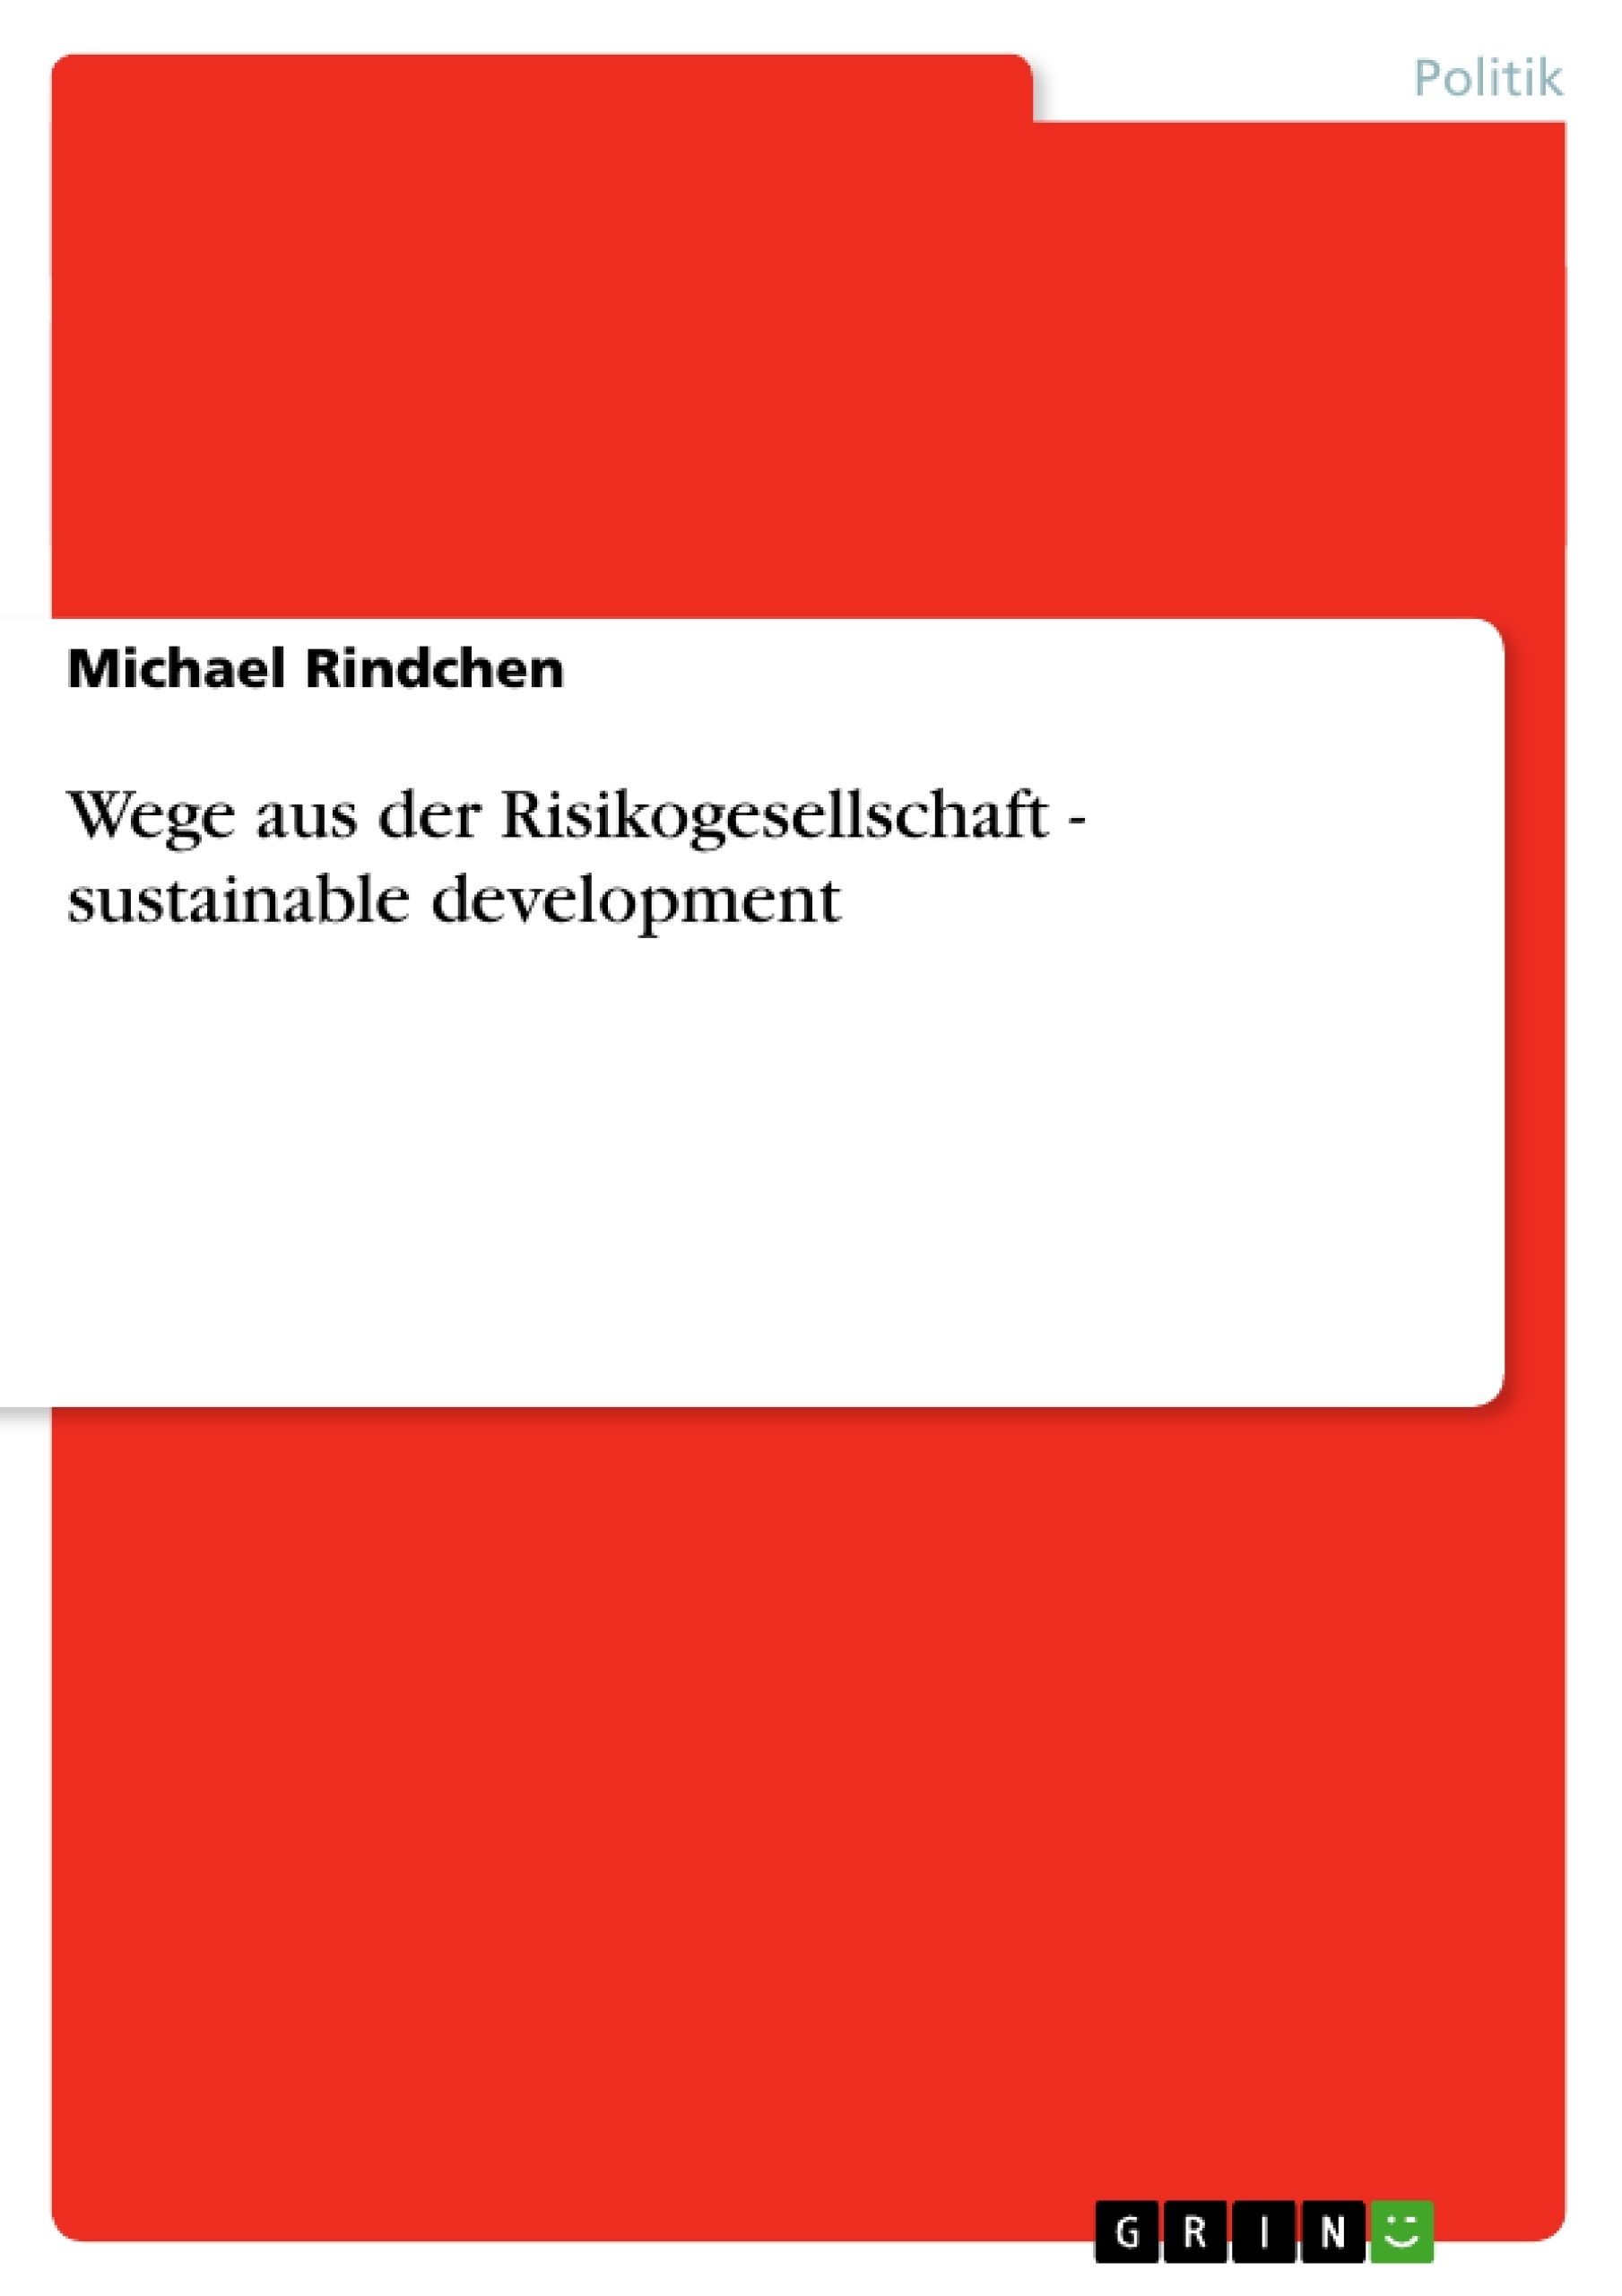 Titre: Wege aus der Risikogesellschaft - sustainable development